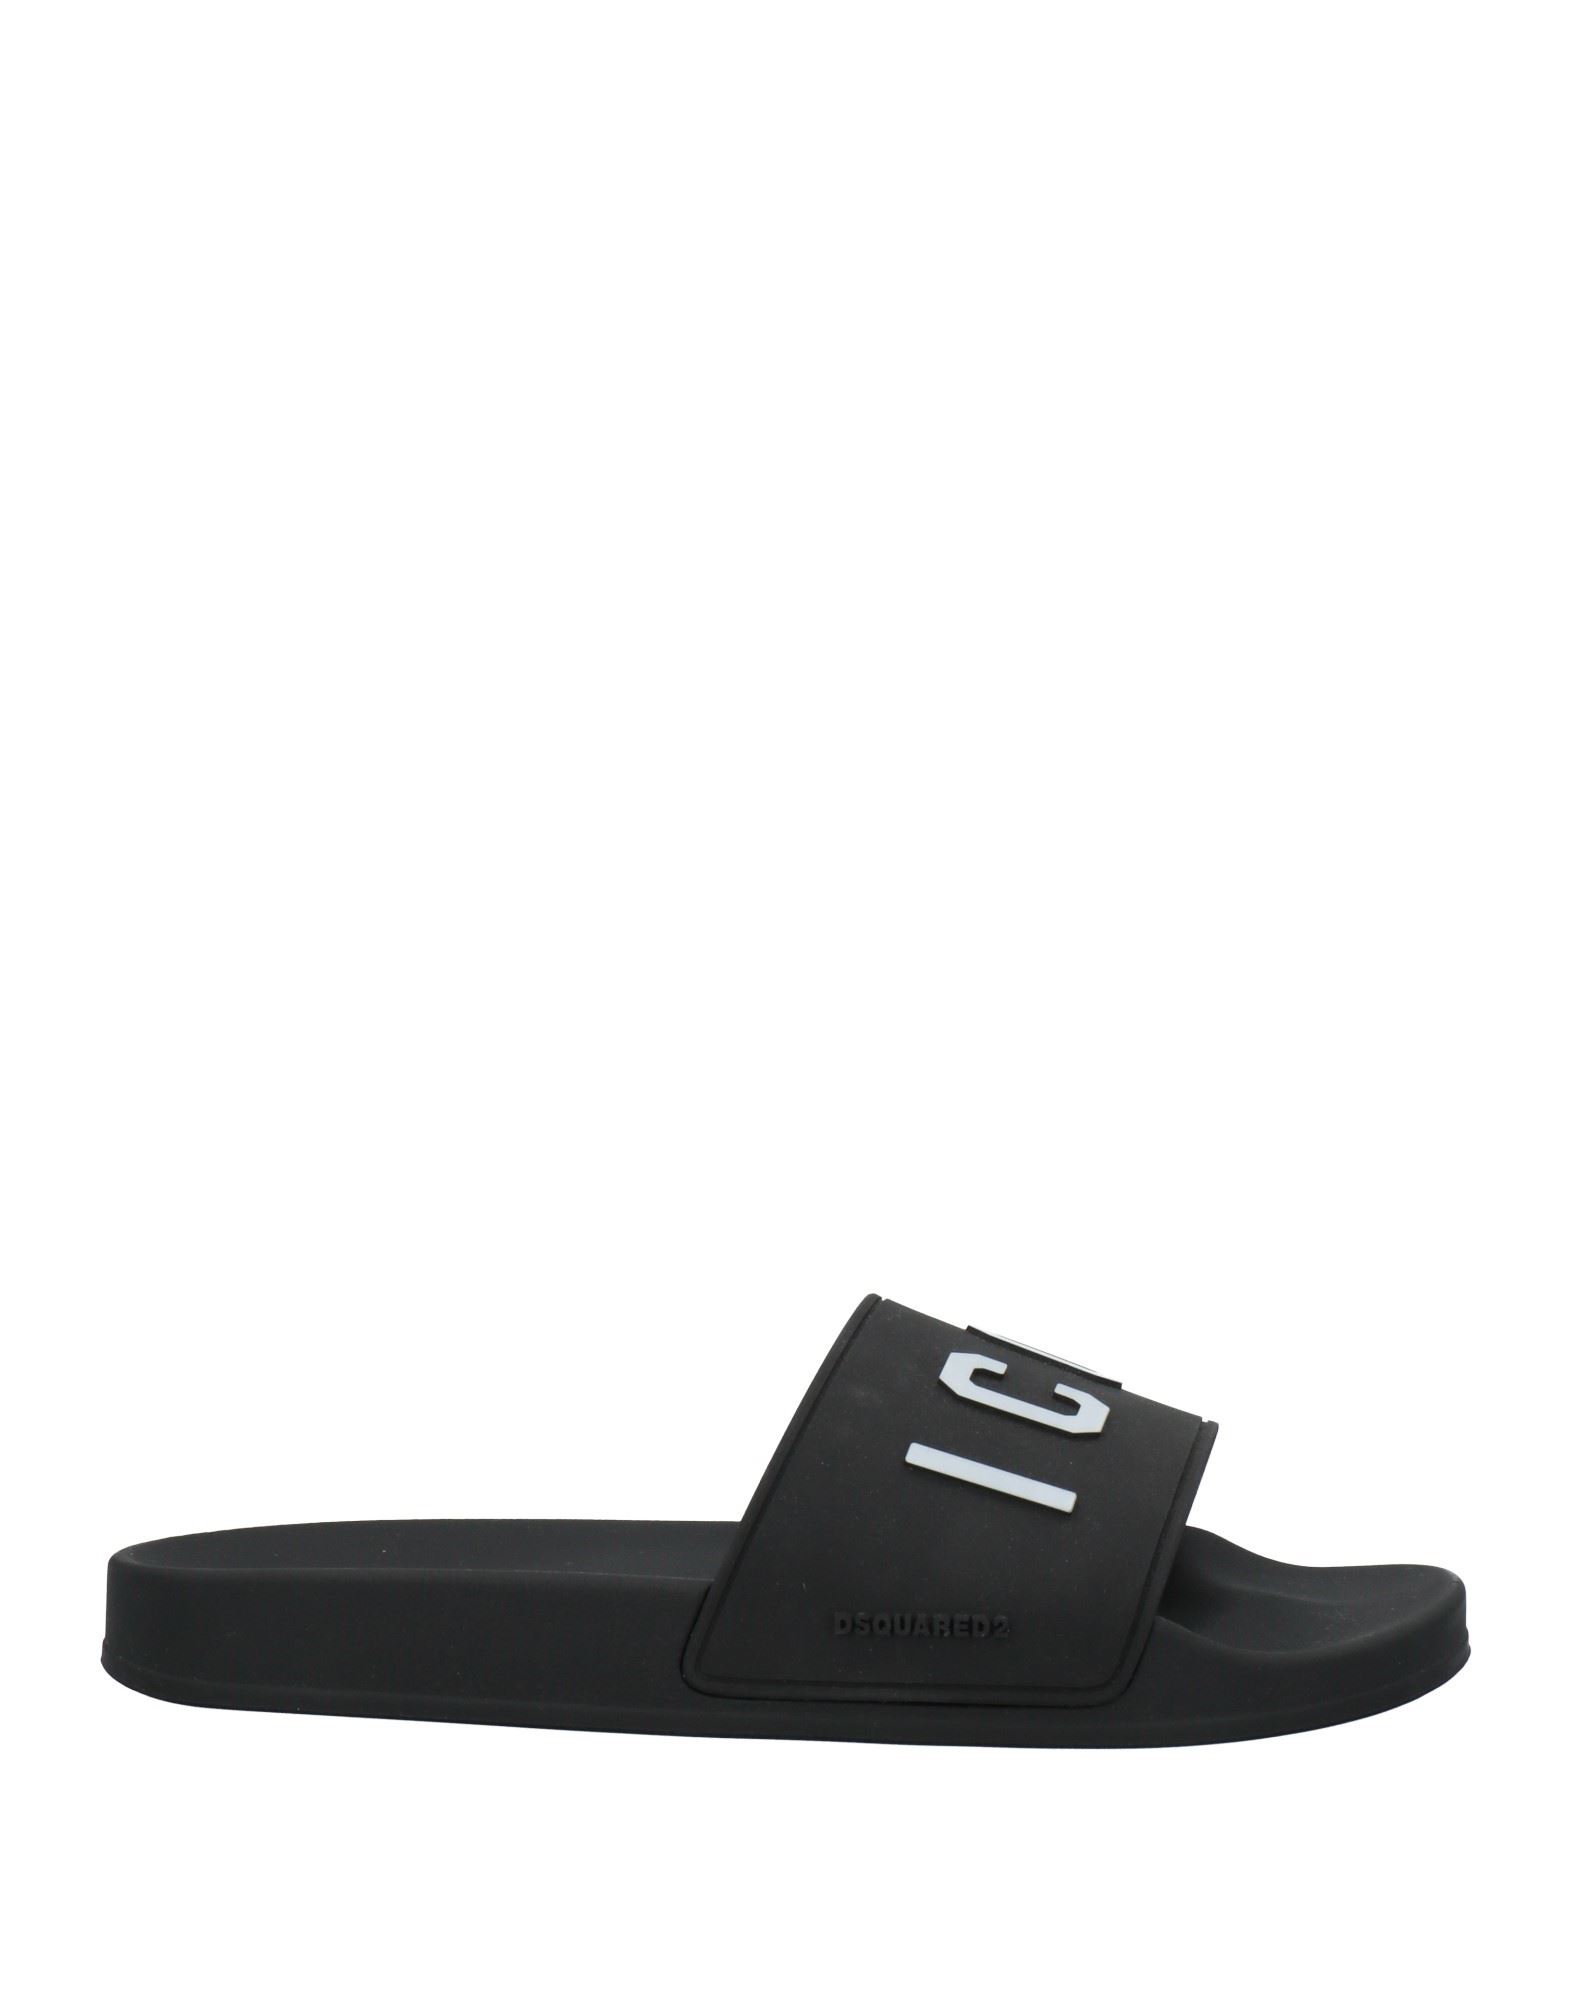 Shop Dsquared2 Man Sandals Black Size 7 Rubber